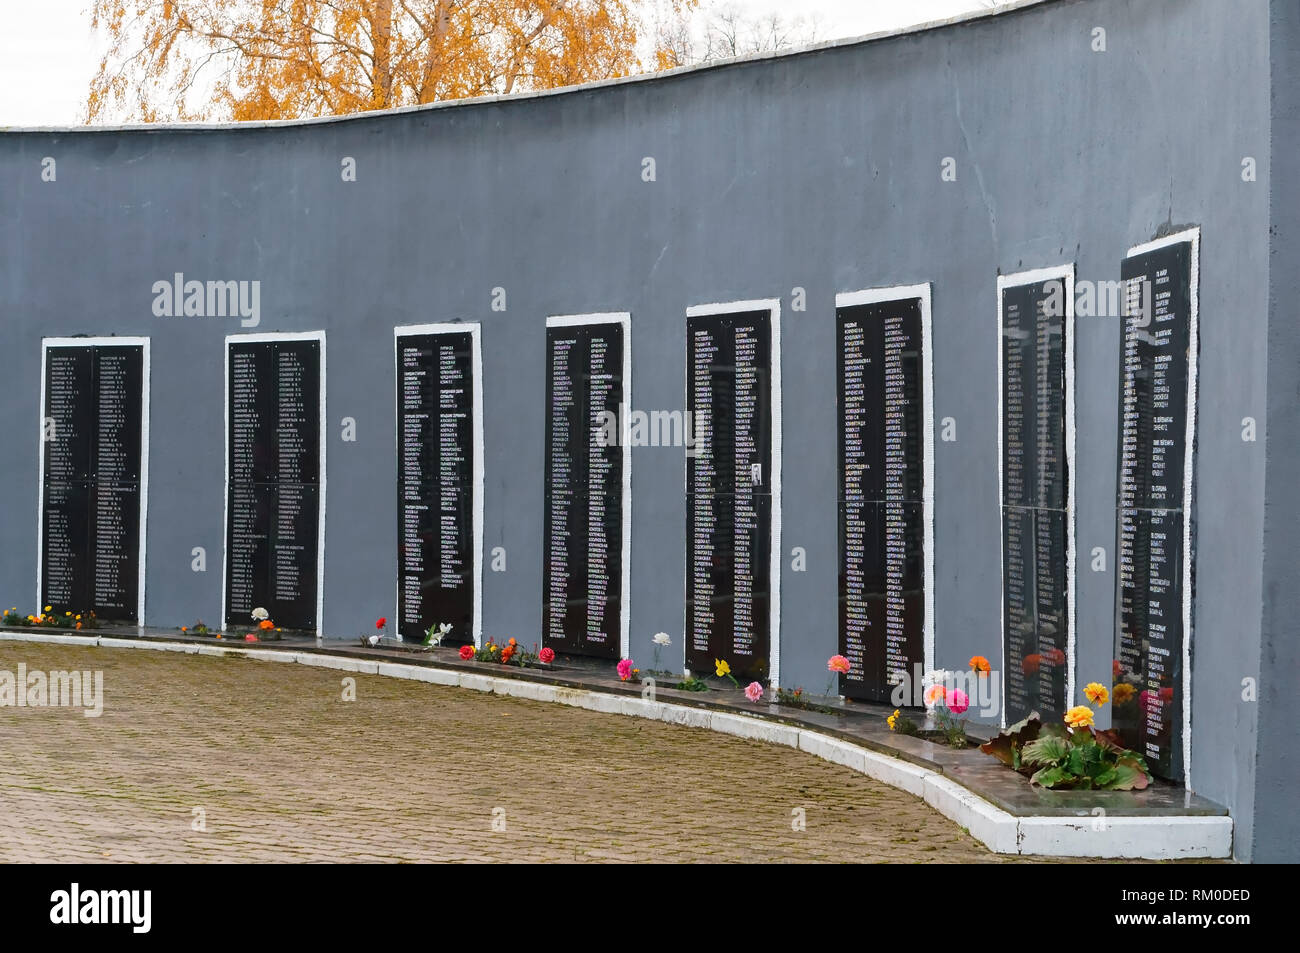 L'oblast de Kaliningrad, un village touristique, la Russie, le 4 novembre 2018, le peuple frère tombe de l'armée russe, la seconde guerre mondiale Banque D'Images